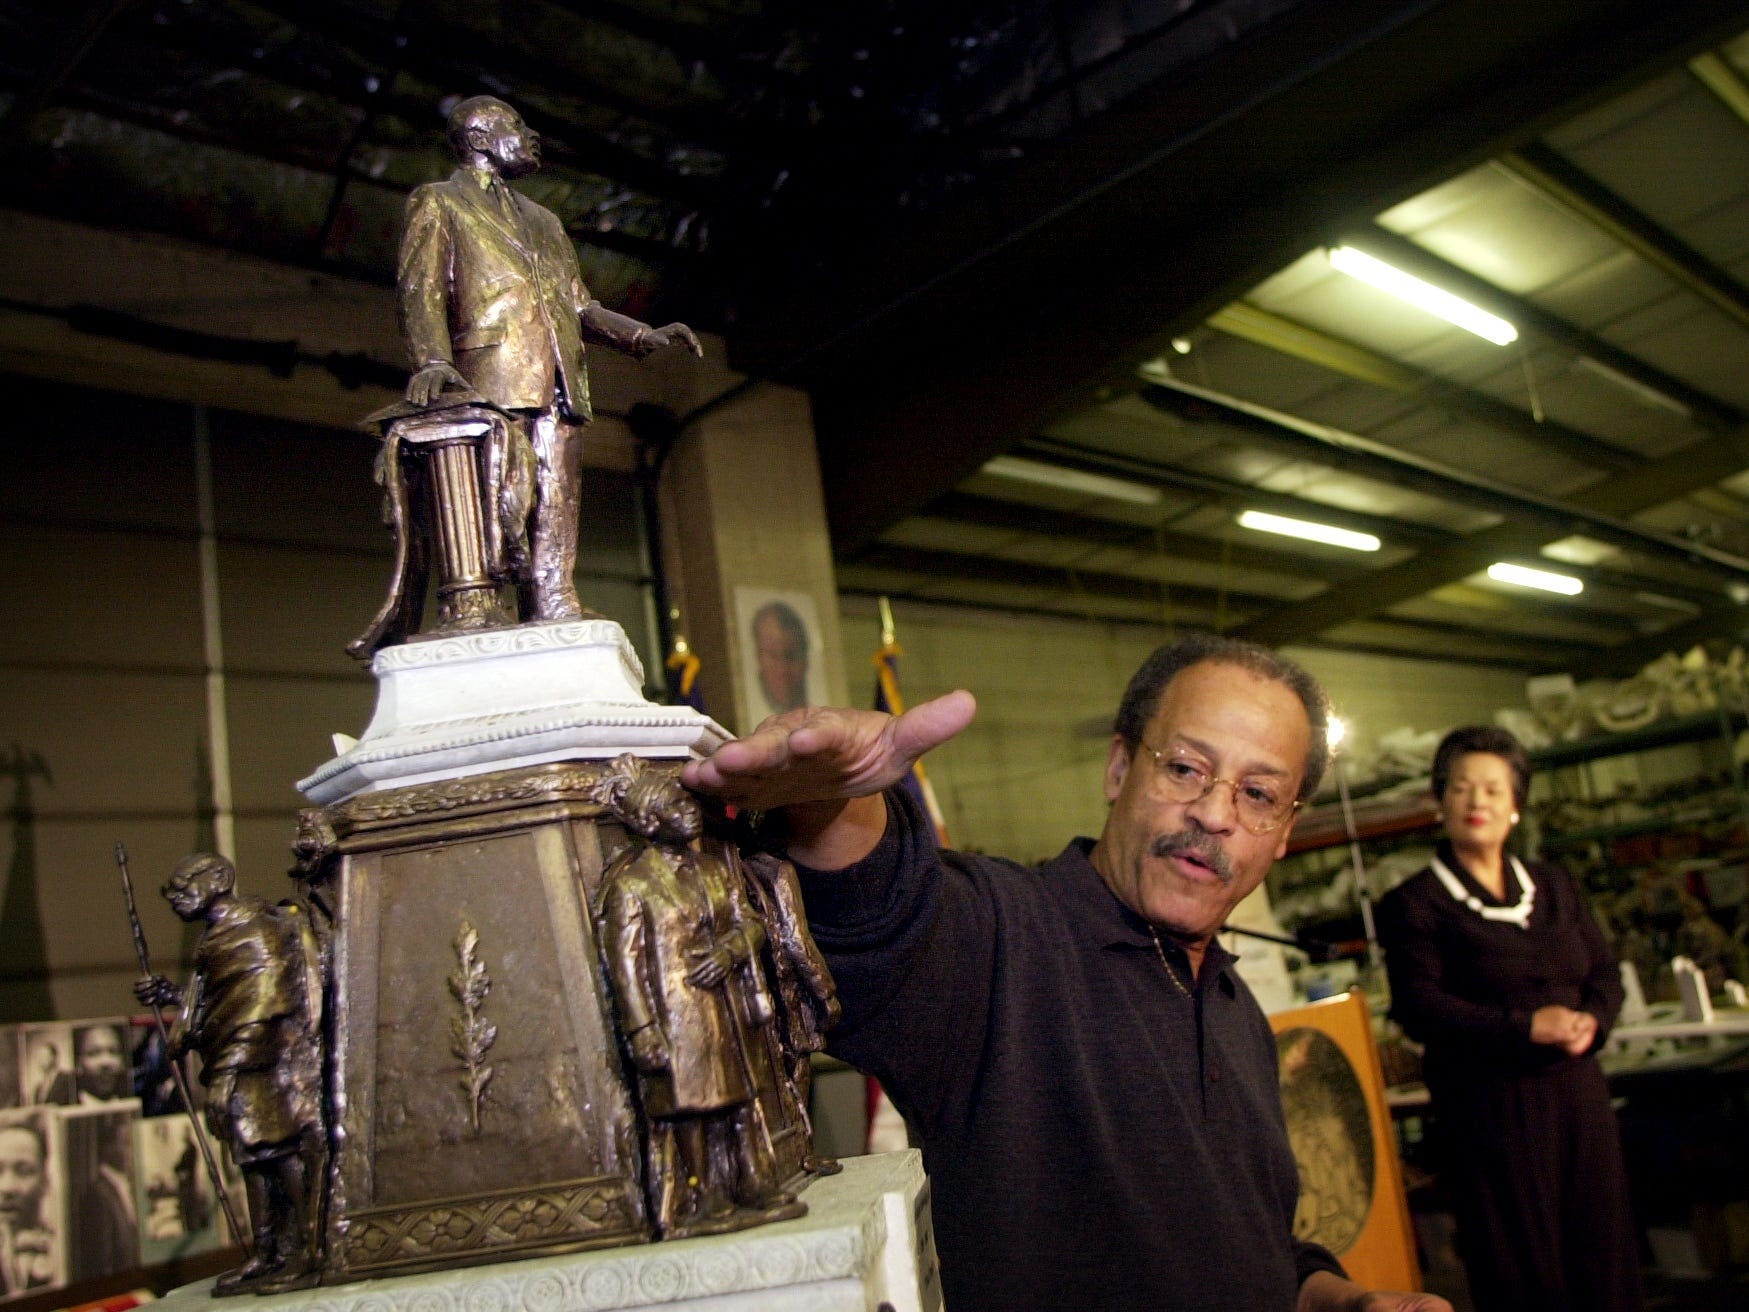 Ed Dwight deutet auf eine Bronzestatue, die er geschaffen hat, während eine Frau in der Ferne zuschaut